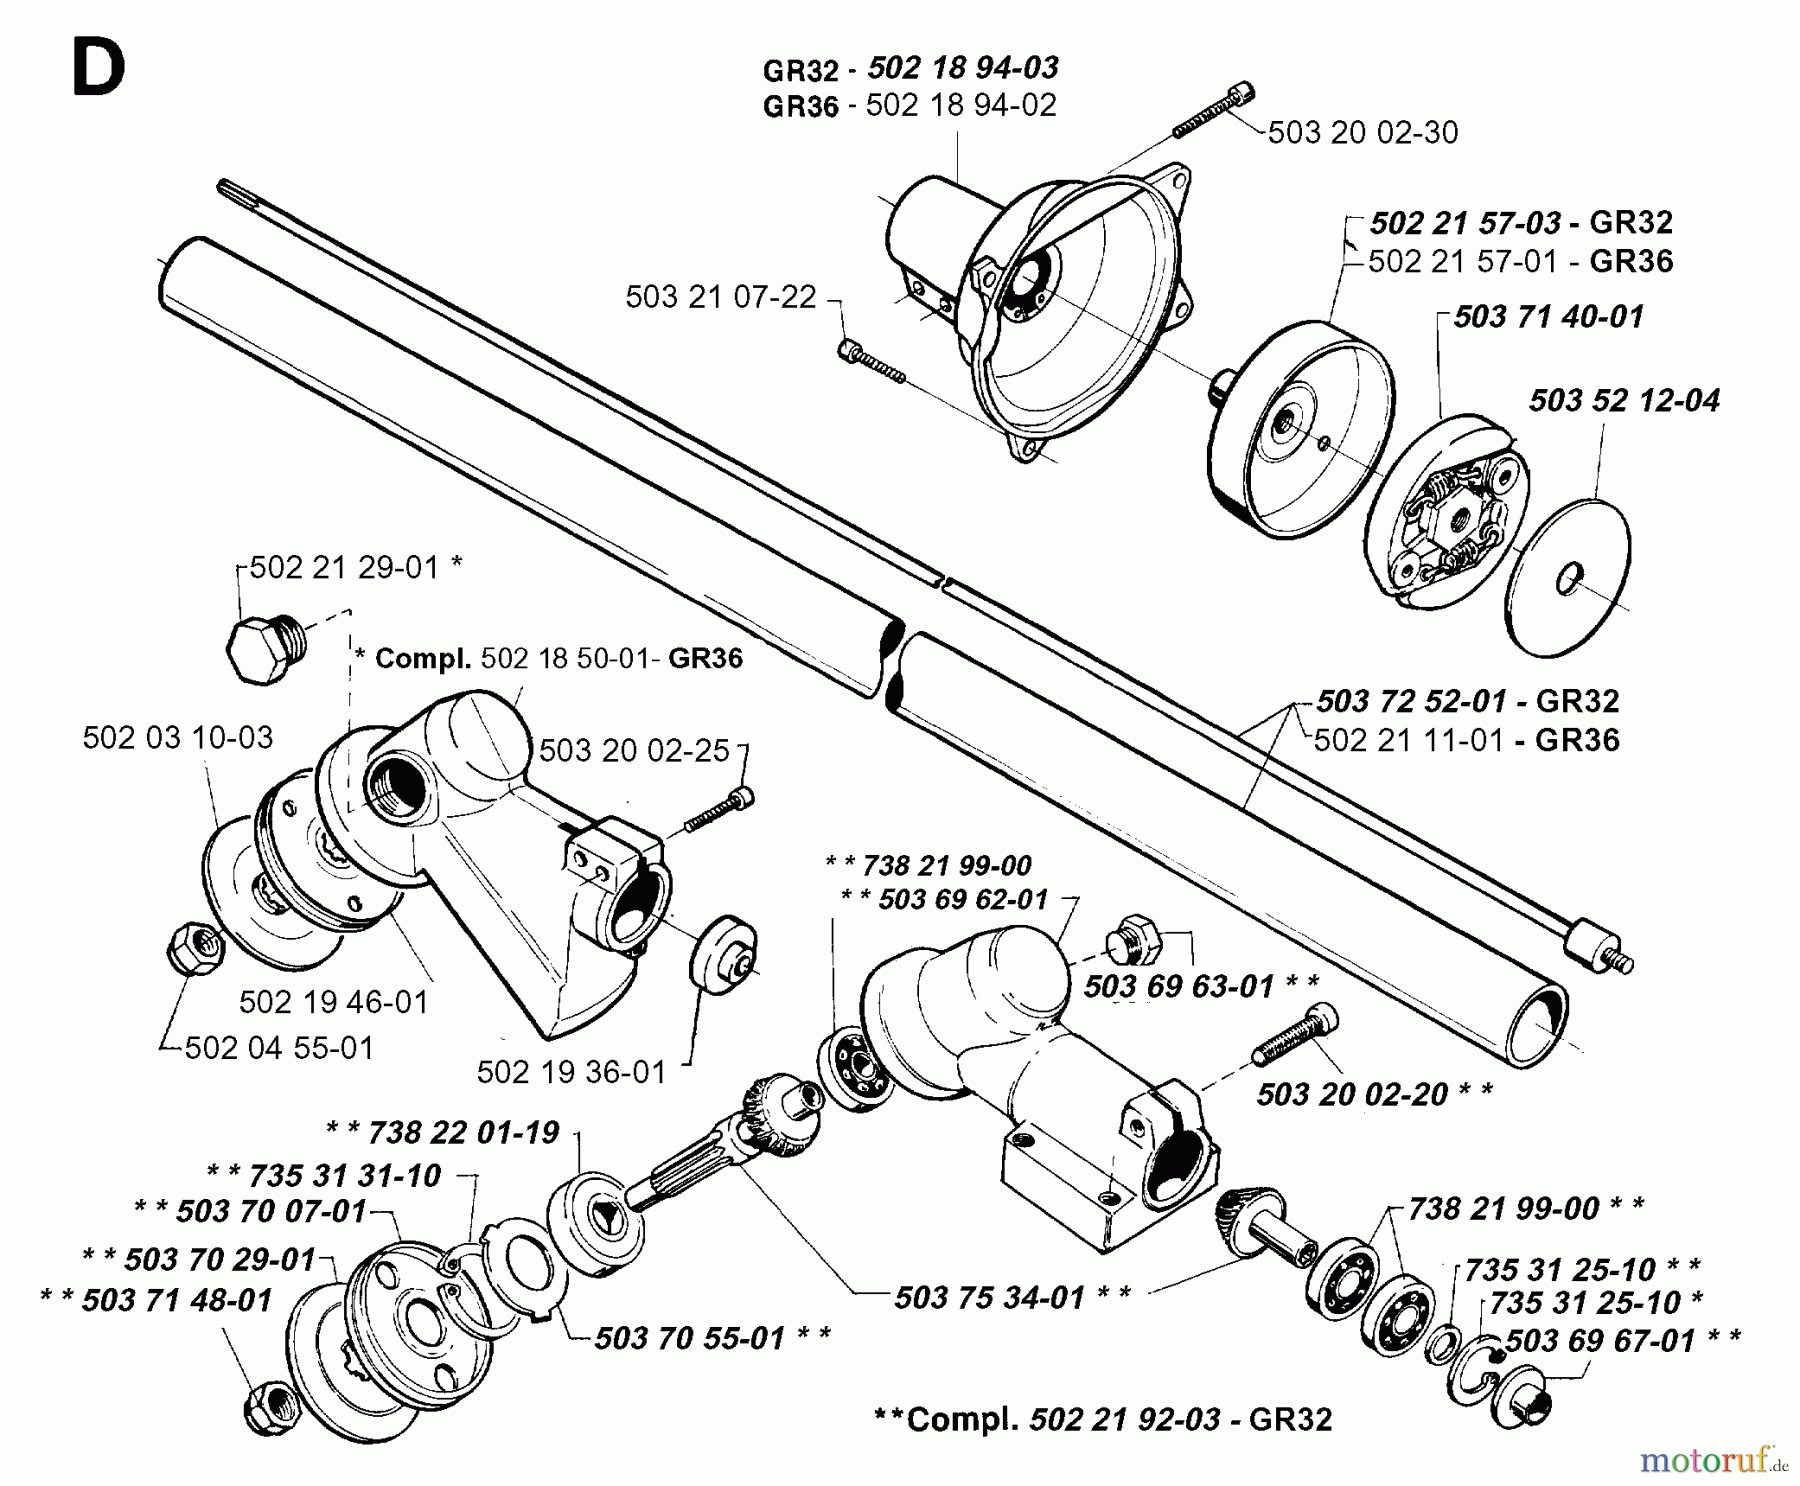  Jonsered Motorsensen, Trimmer GR36 - Jonsered String/Brush Trimmer (1994-02) BEVEL GEAR SHAFT